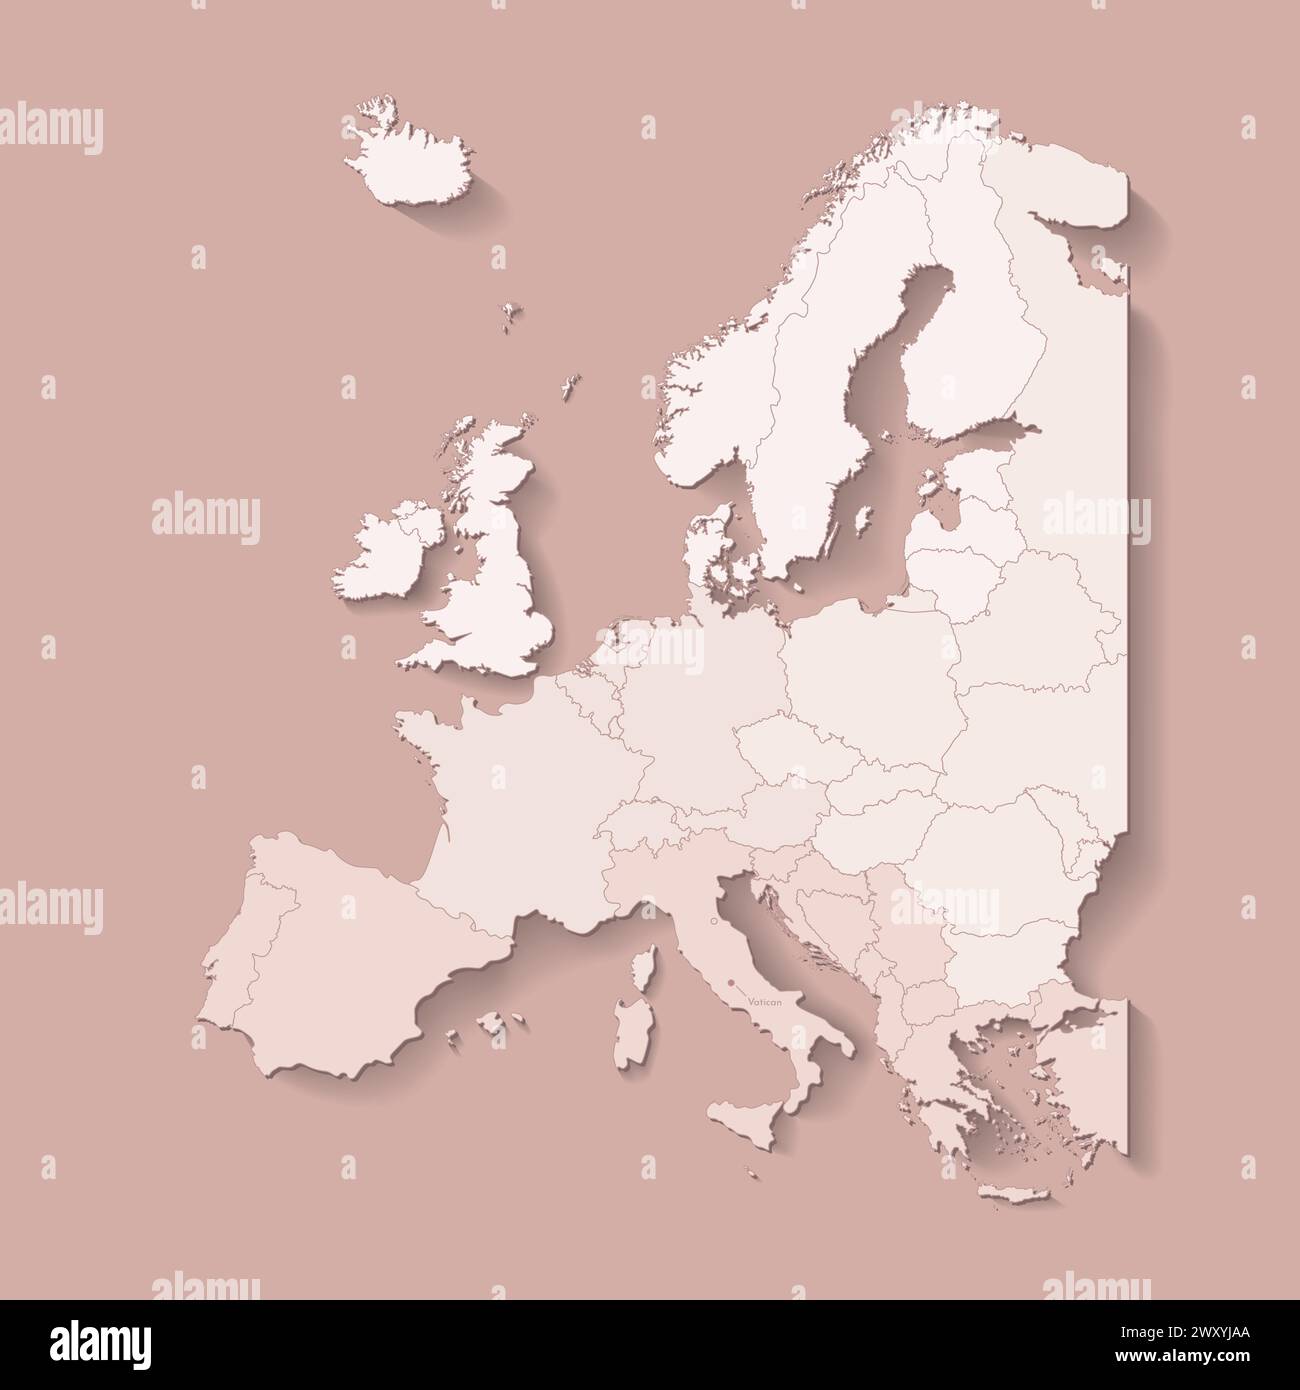 Illustrazione vettoriale con terra europea con confini di stati e paese contrassegnato città del Vaticano. Mappa politica di colore marrone con occidentale, sud ed e. Illustrazione Vettoriale